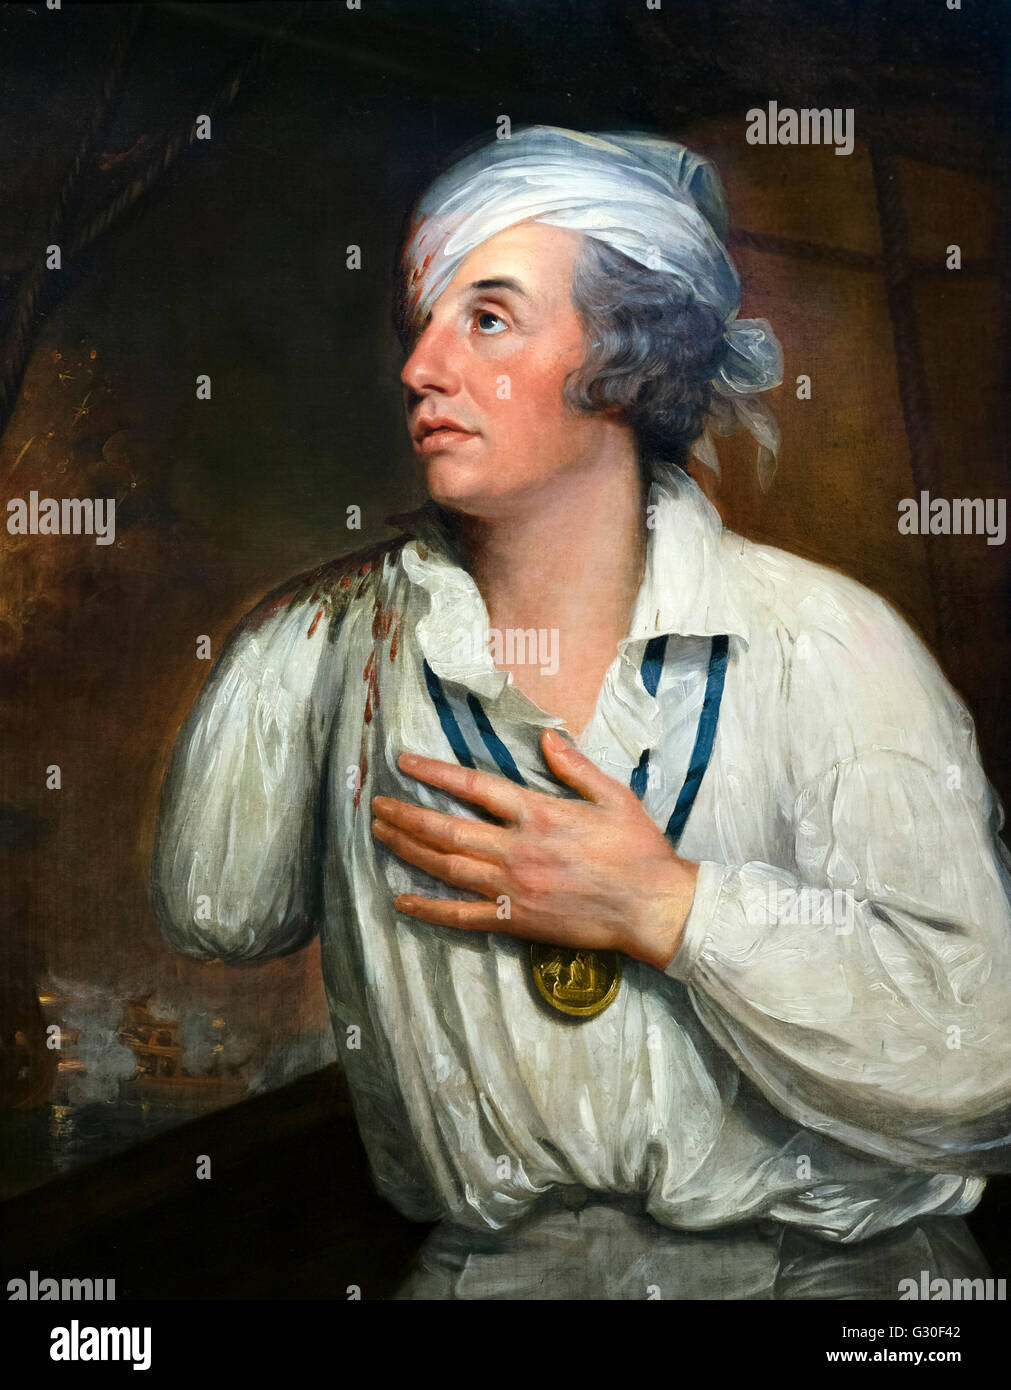 Lord Nelson. Porträt von Konteradmiral Sir Horatio Nelson, zugeschrieben Guy Head, Öl auf Leinwand, c.1800. Dieses Gemälde zeigt Nelson nach einer Verwundung in der Schlacht des Nils im Jahr 1798. Stockfoto